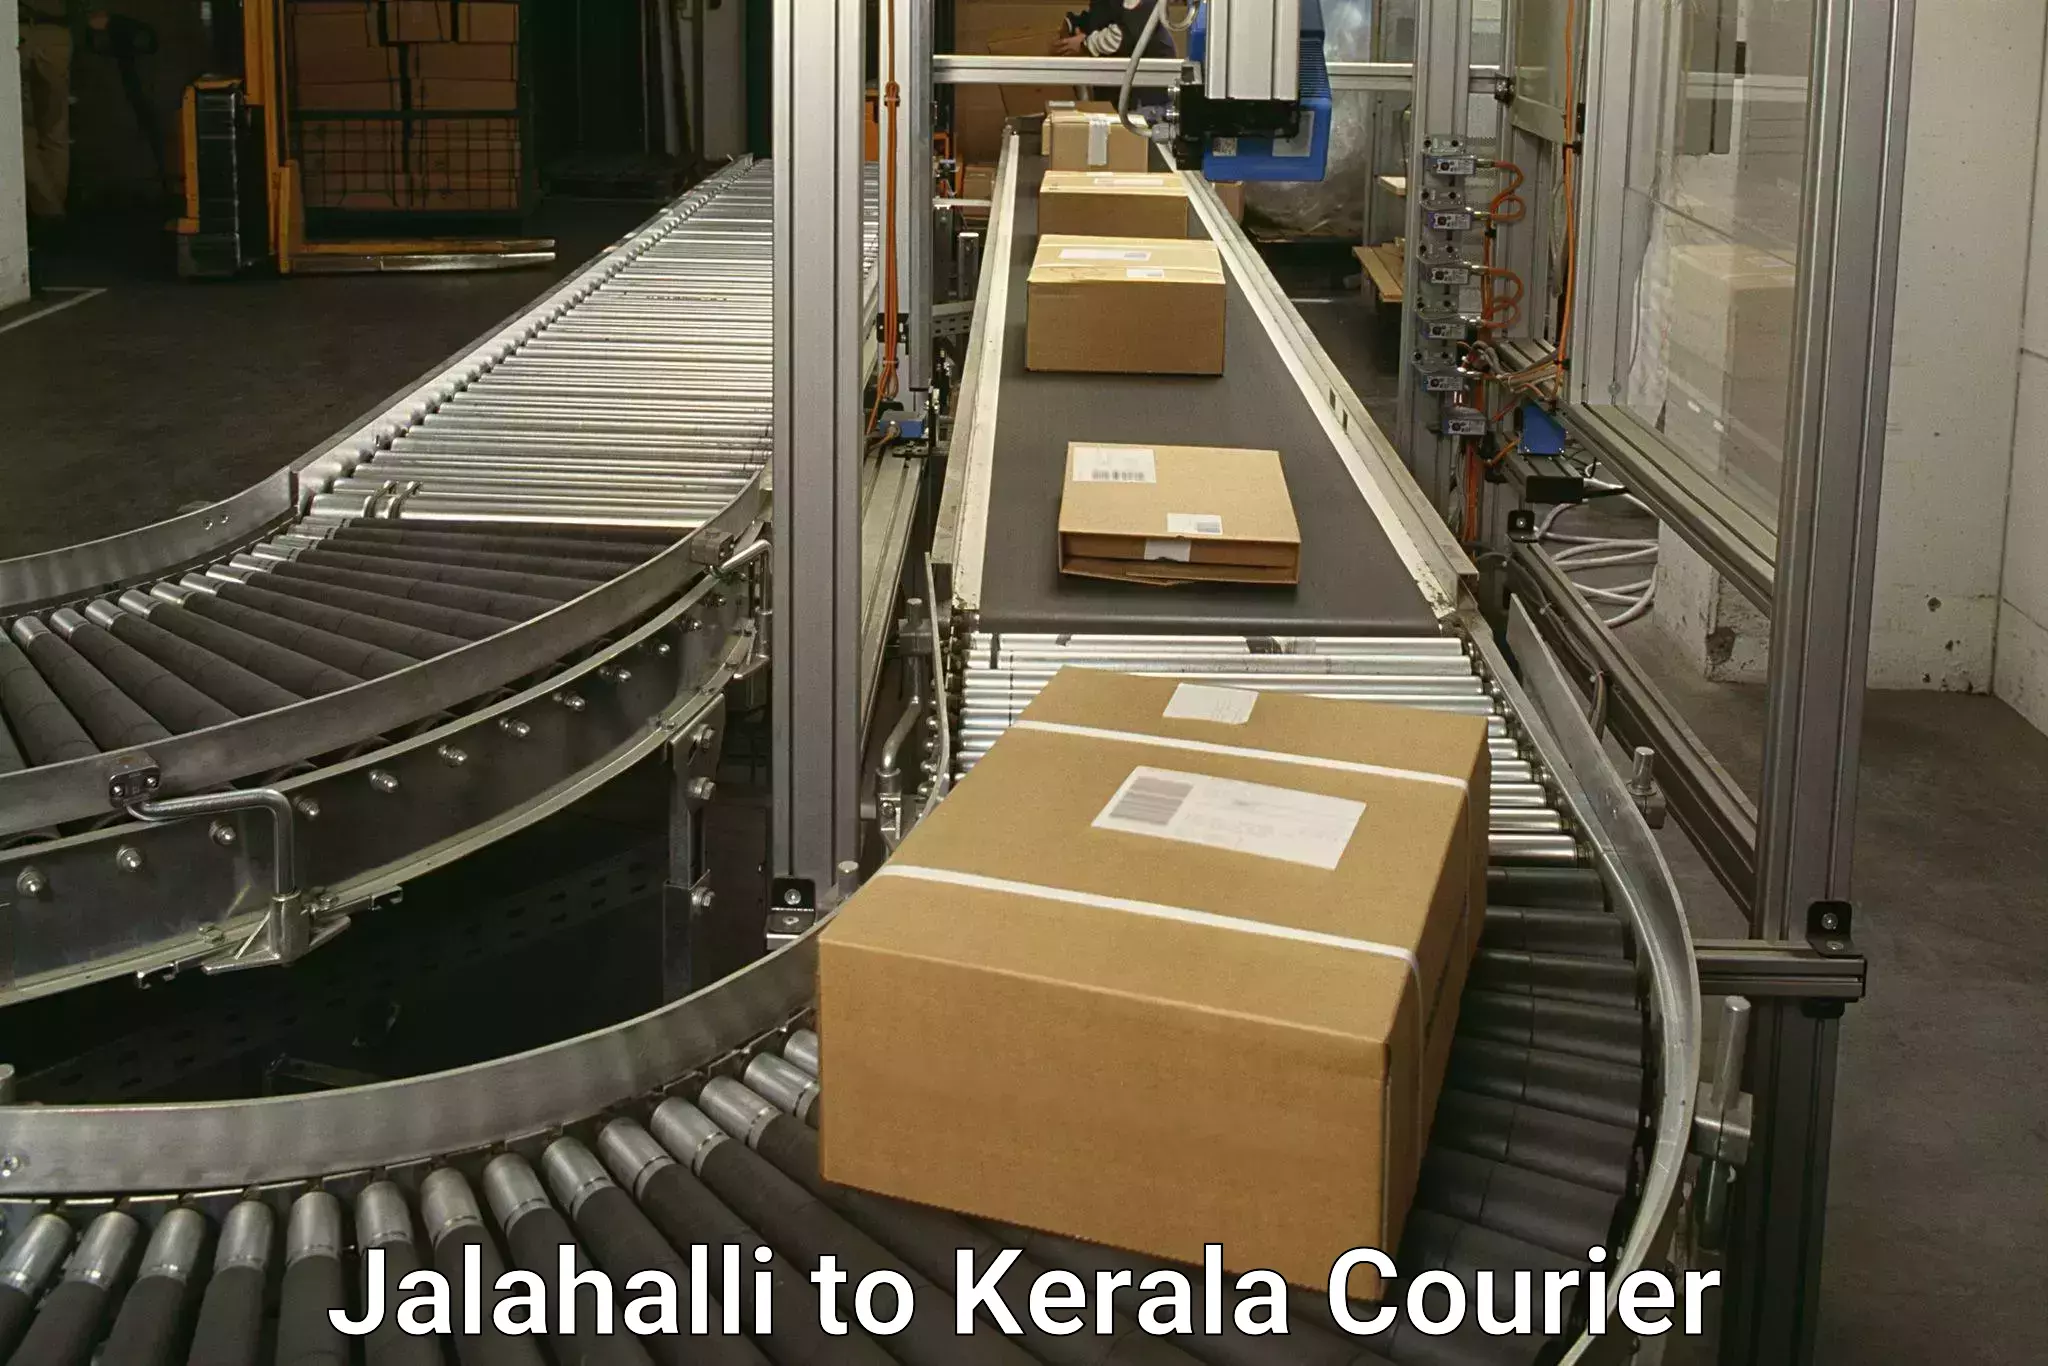 Express courier capabilities Jalahalli to Tiruvalla